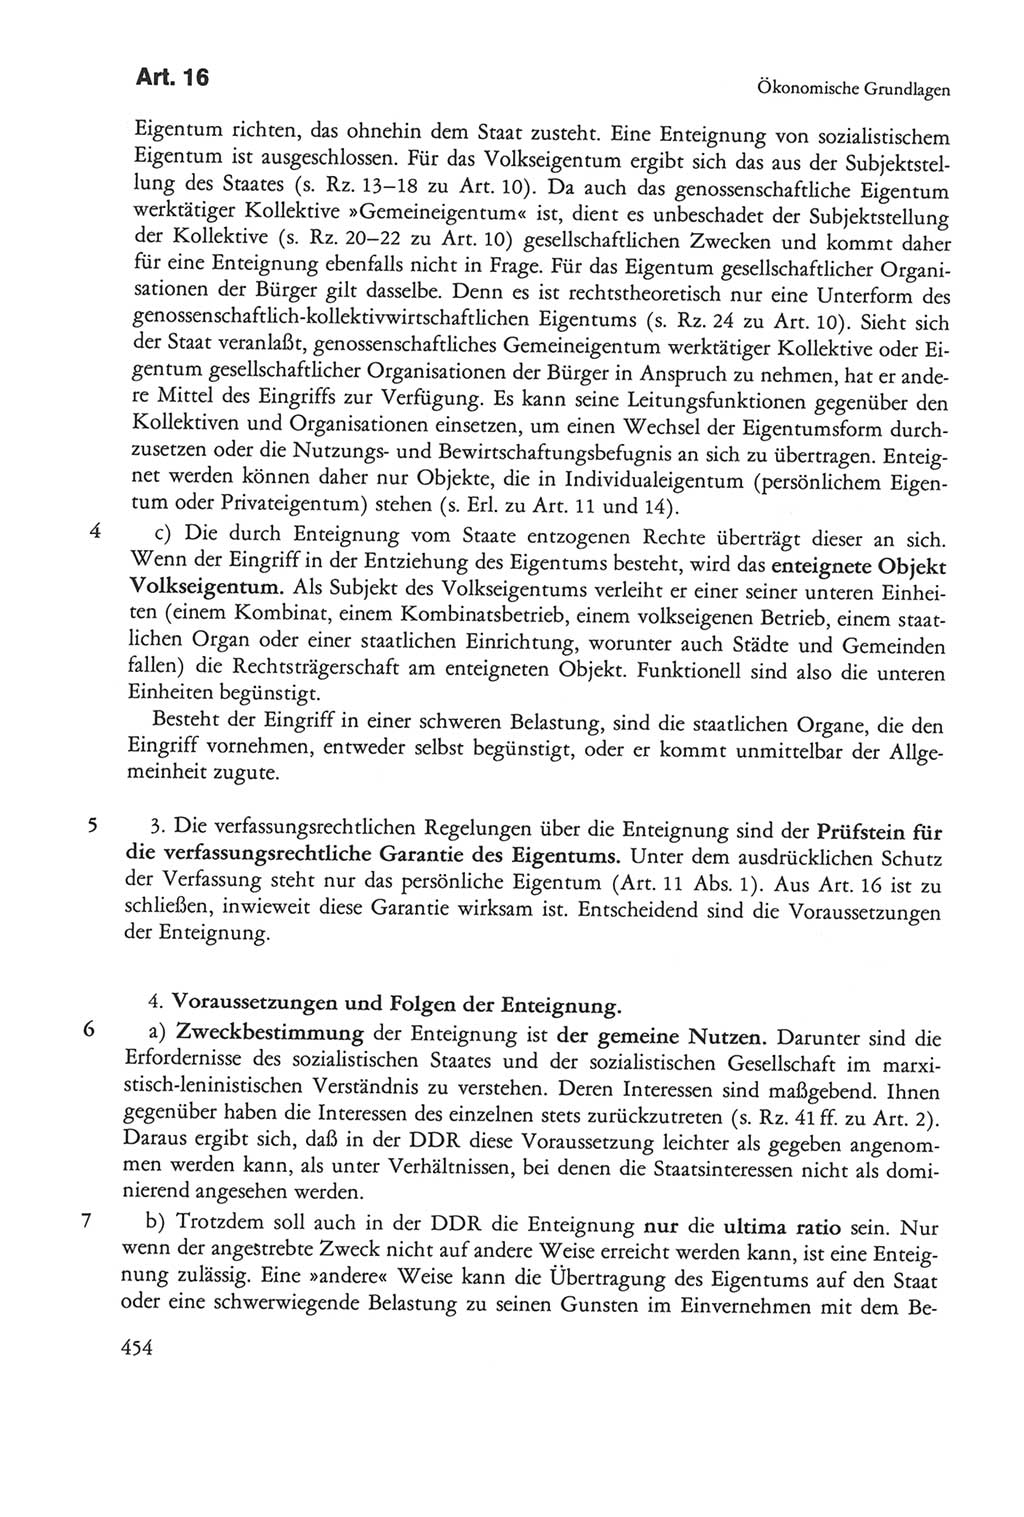 Die sozialistische Verfassung der Deutschen Demokratischen Republik (DDR), Kommentar mit einem Nachtrag 1997, Seite 454 (Soz. Verf. DDR Komm. Nachtr. 1997, S. 454)